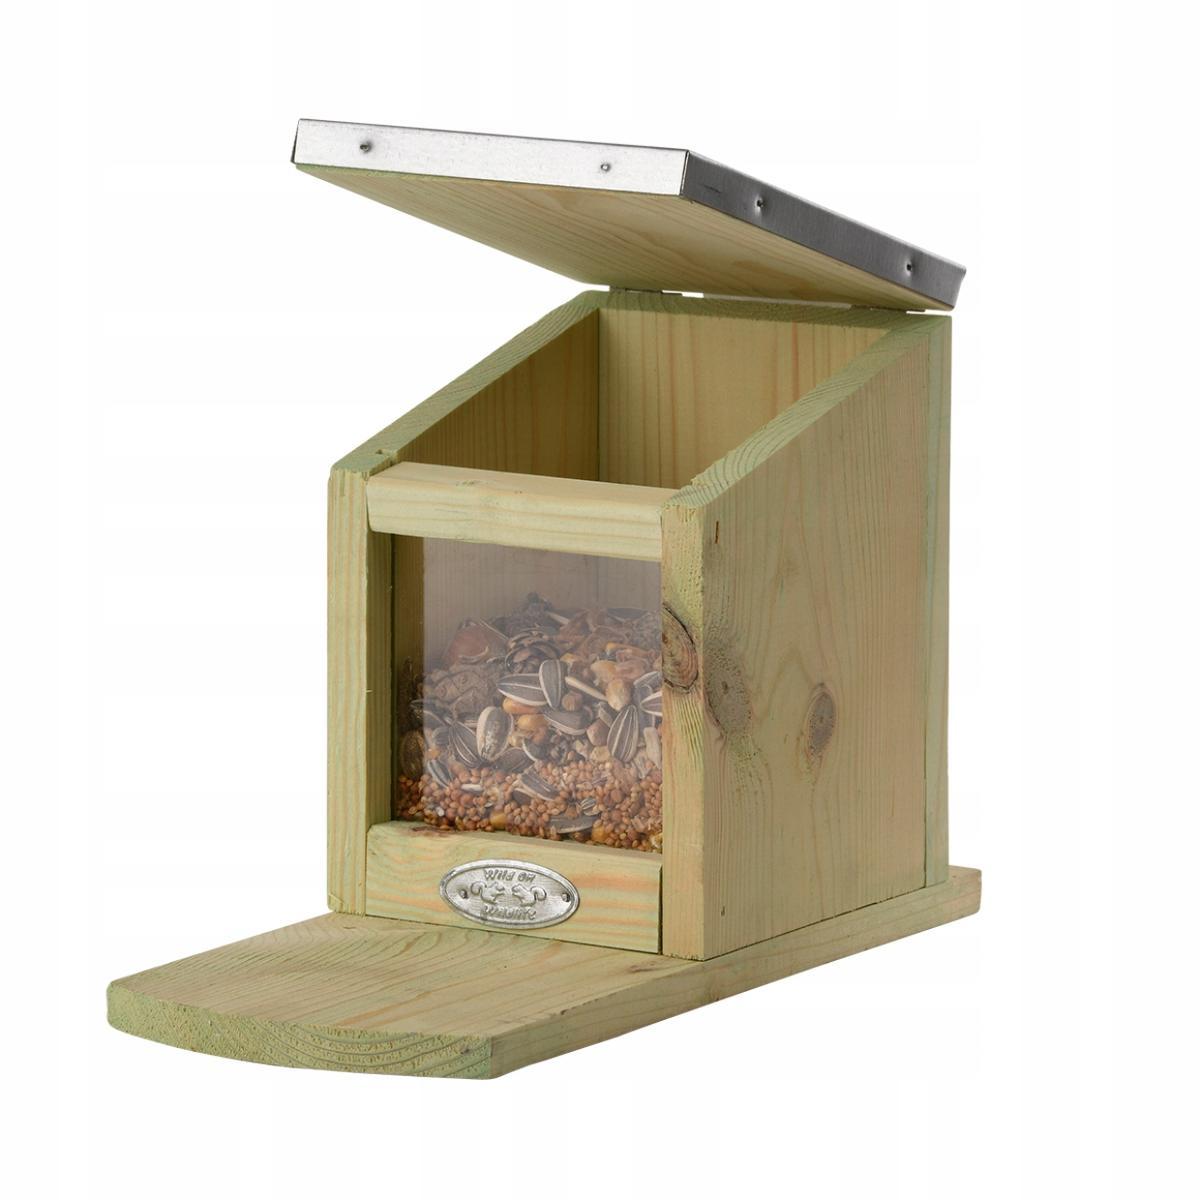 Karmnik dla wiewiórek drewniany - ocynkowany dach 0 Full Screen